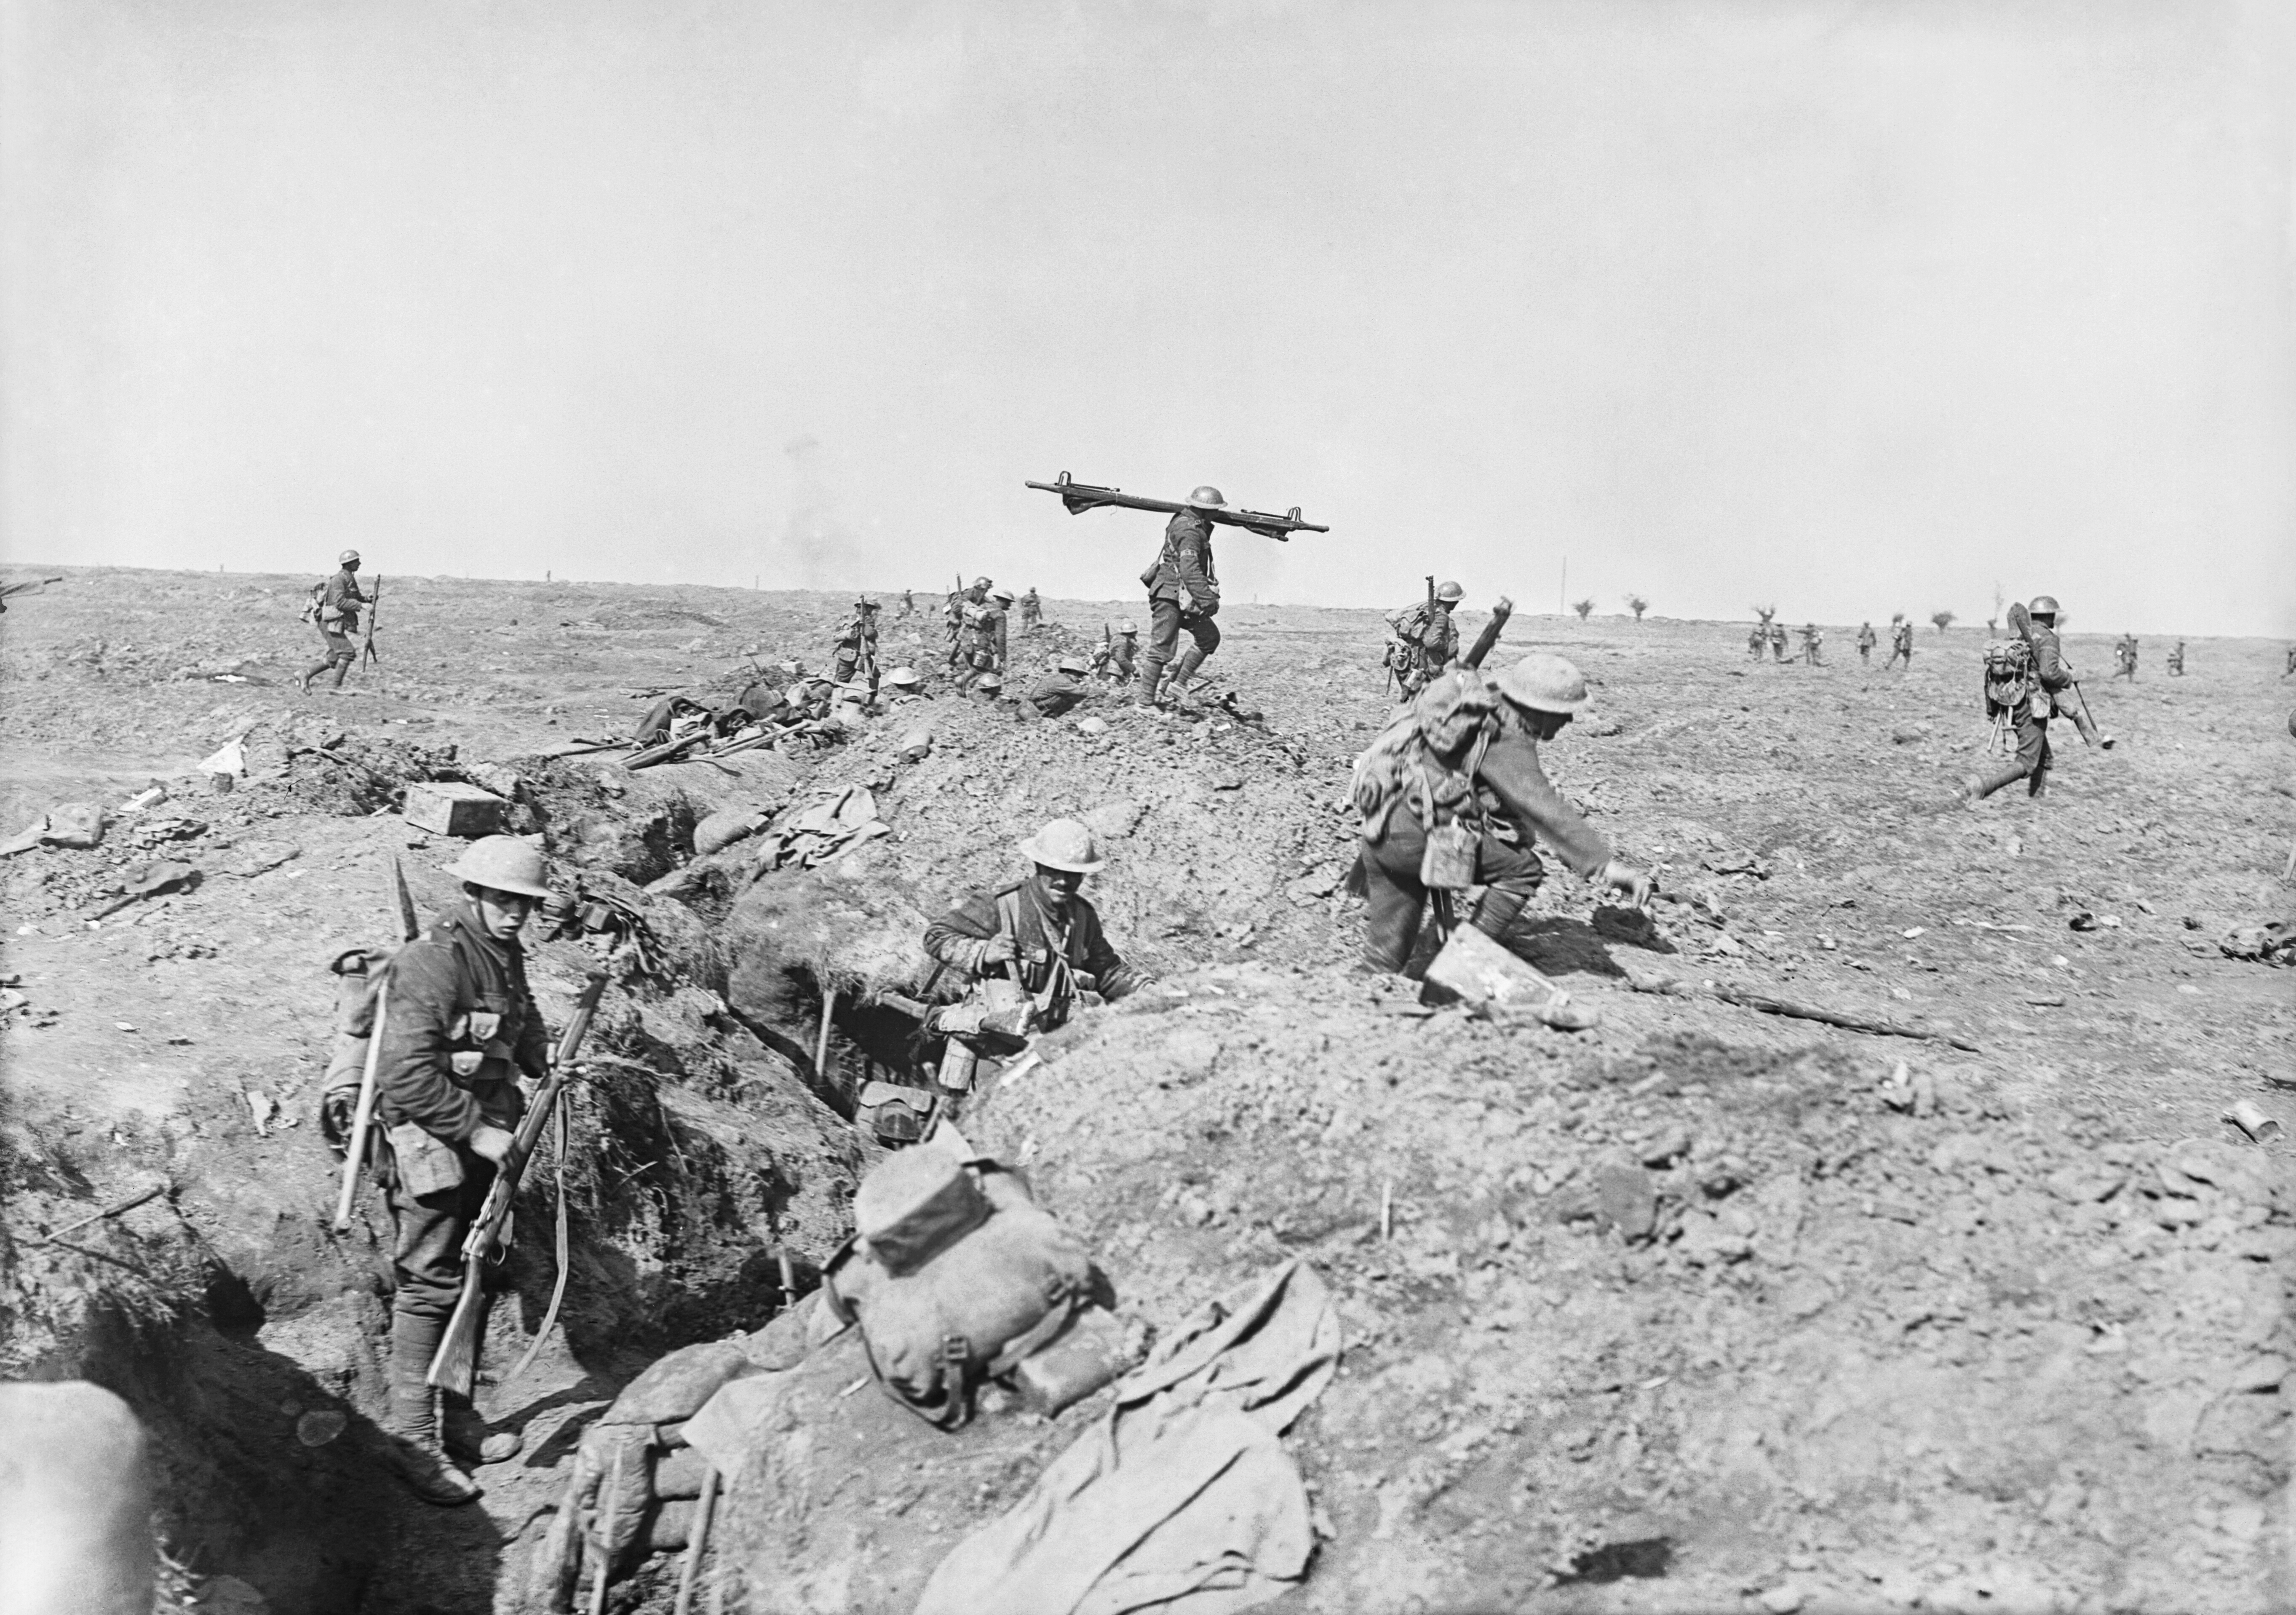 British_infantry_Morval_25_September_1916.jpg